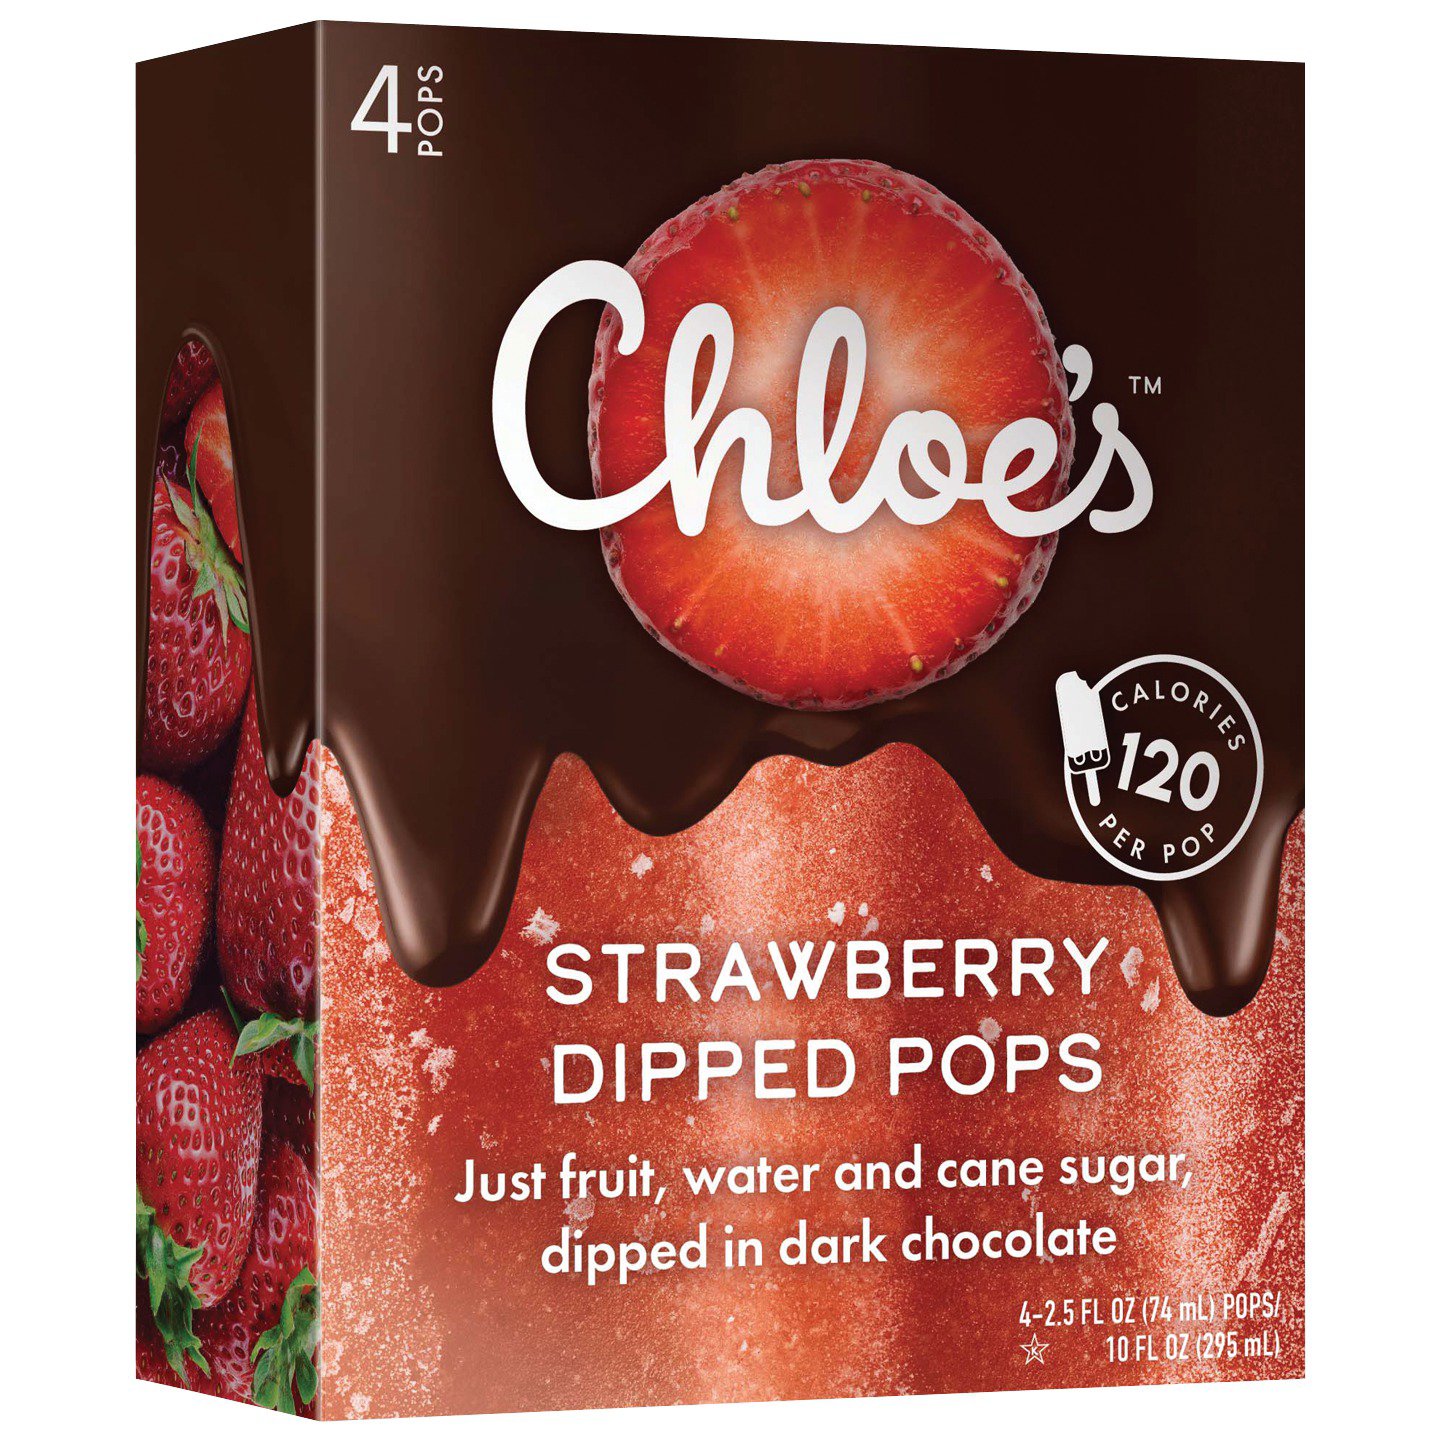 Chloe's Strawberry Fruit Pops